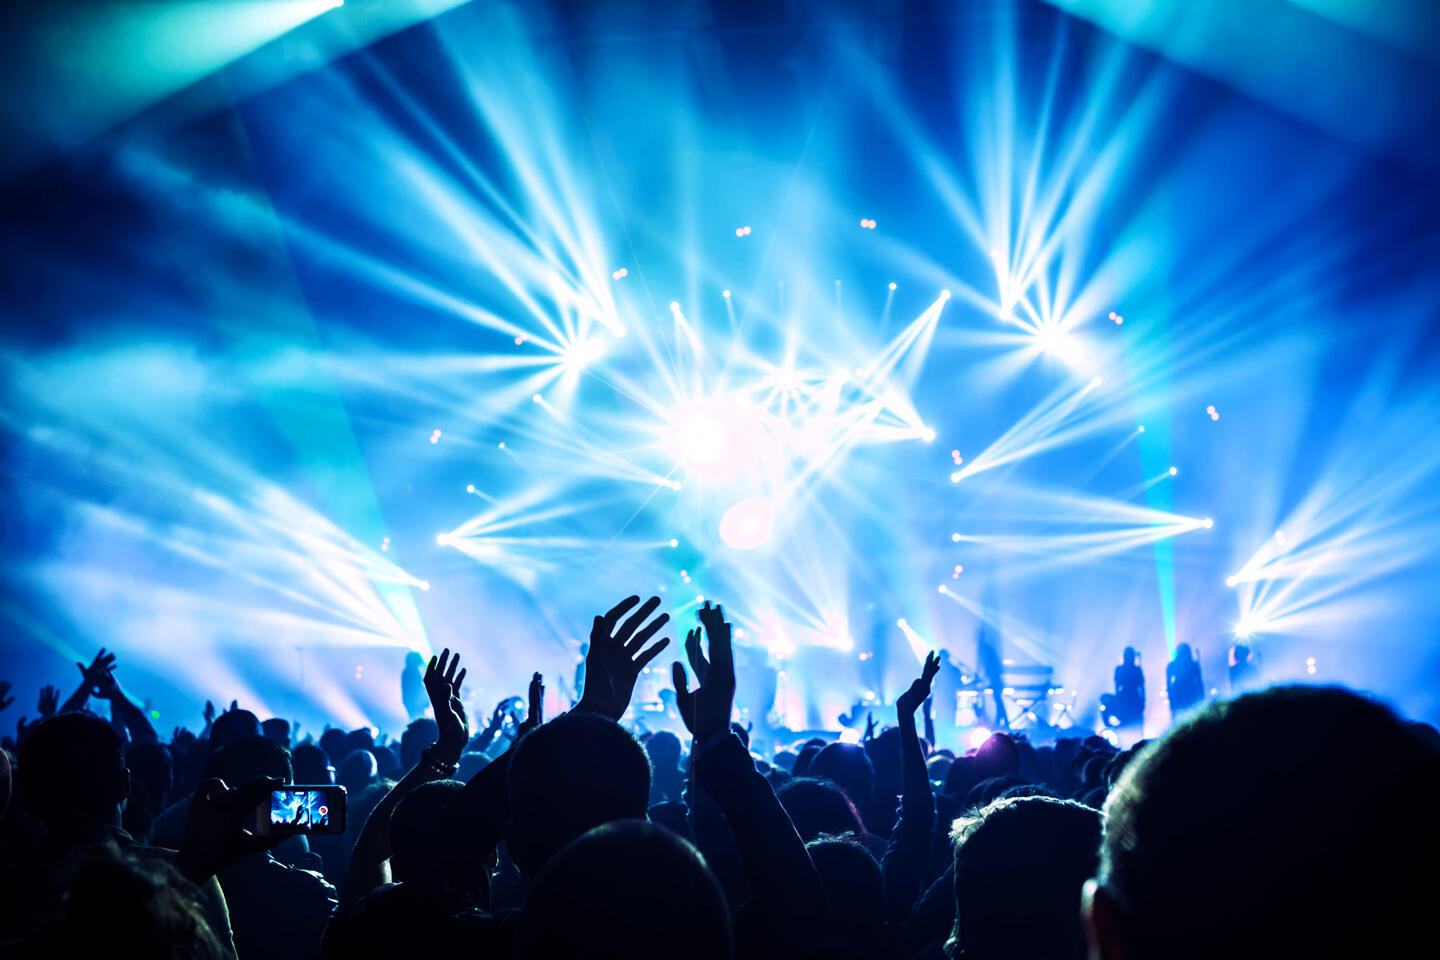 Foule en extase lors d'un concert de musique techno I Love Techno Europe à Montpellier, lumières de scène vibrantes et dynamiques capturant l'atmosphère électrisante de l'événement.